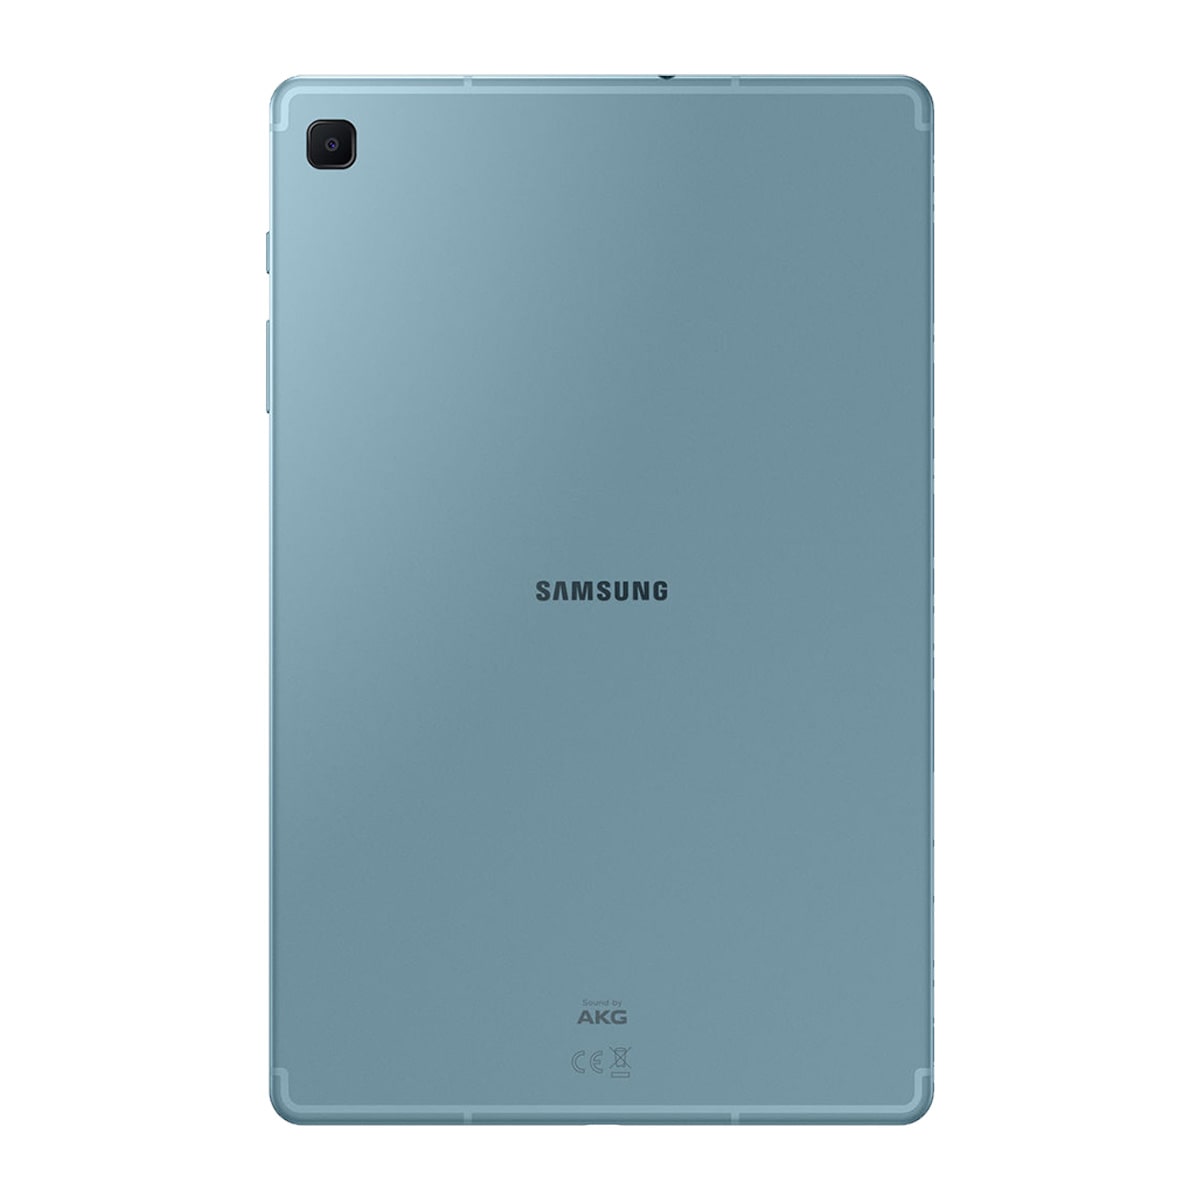 تبلت سامسونگ مدل Galaxy Tab S6 Lite به همراه S Pen ظرفیت 64 گیگابایت